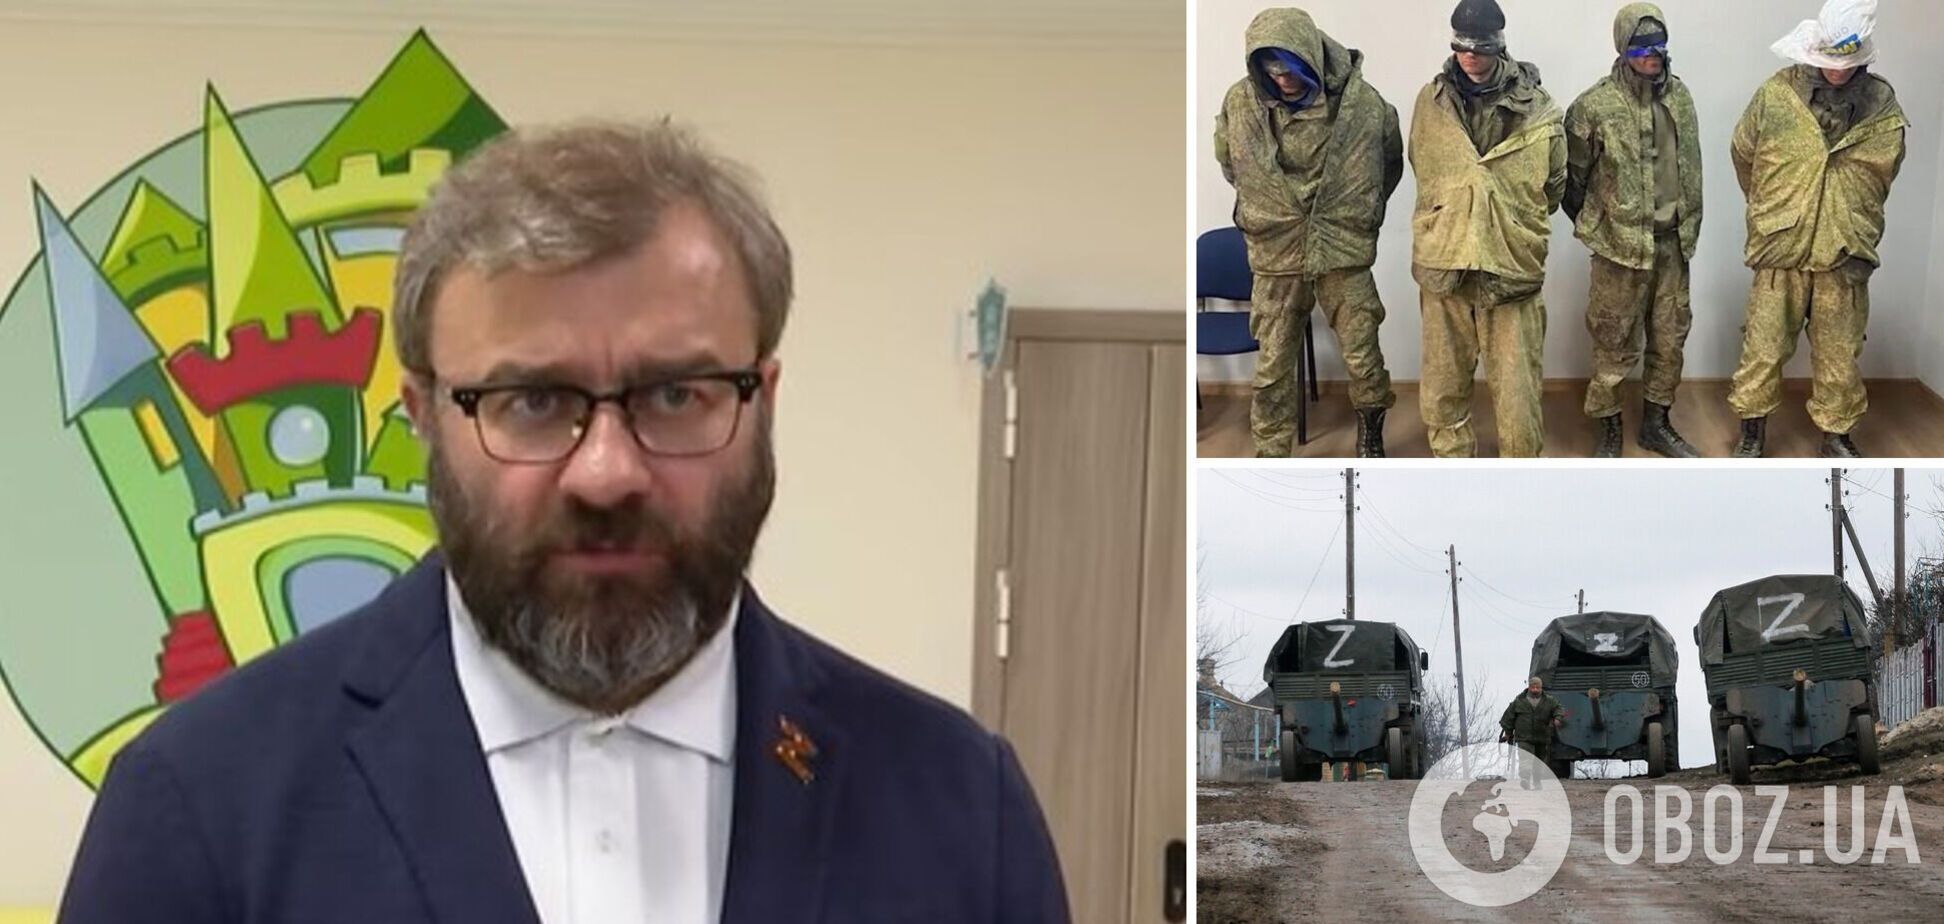 Пореченков назвал российских военных, которые убивают украинцев, 'лучшими людьми страны'